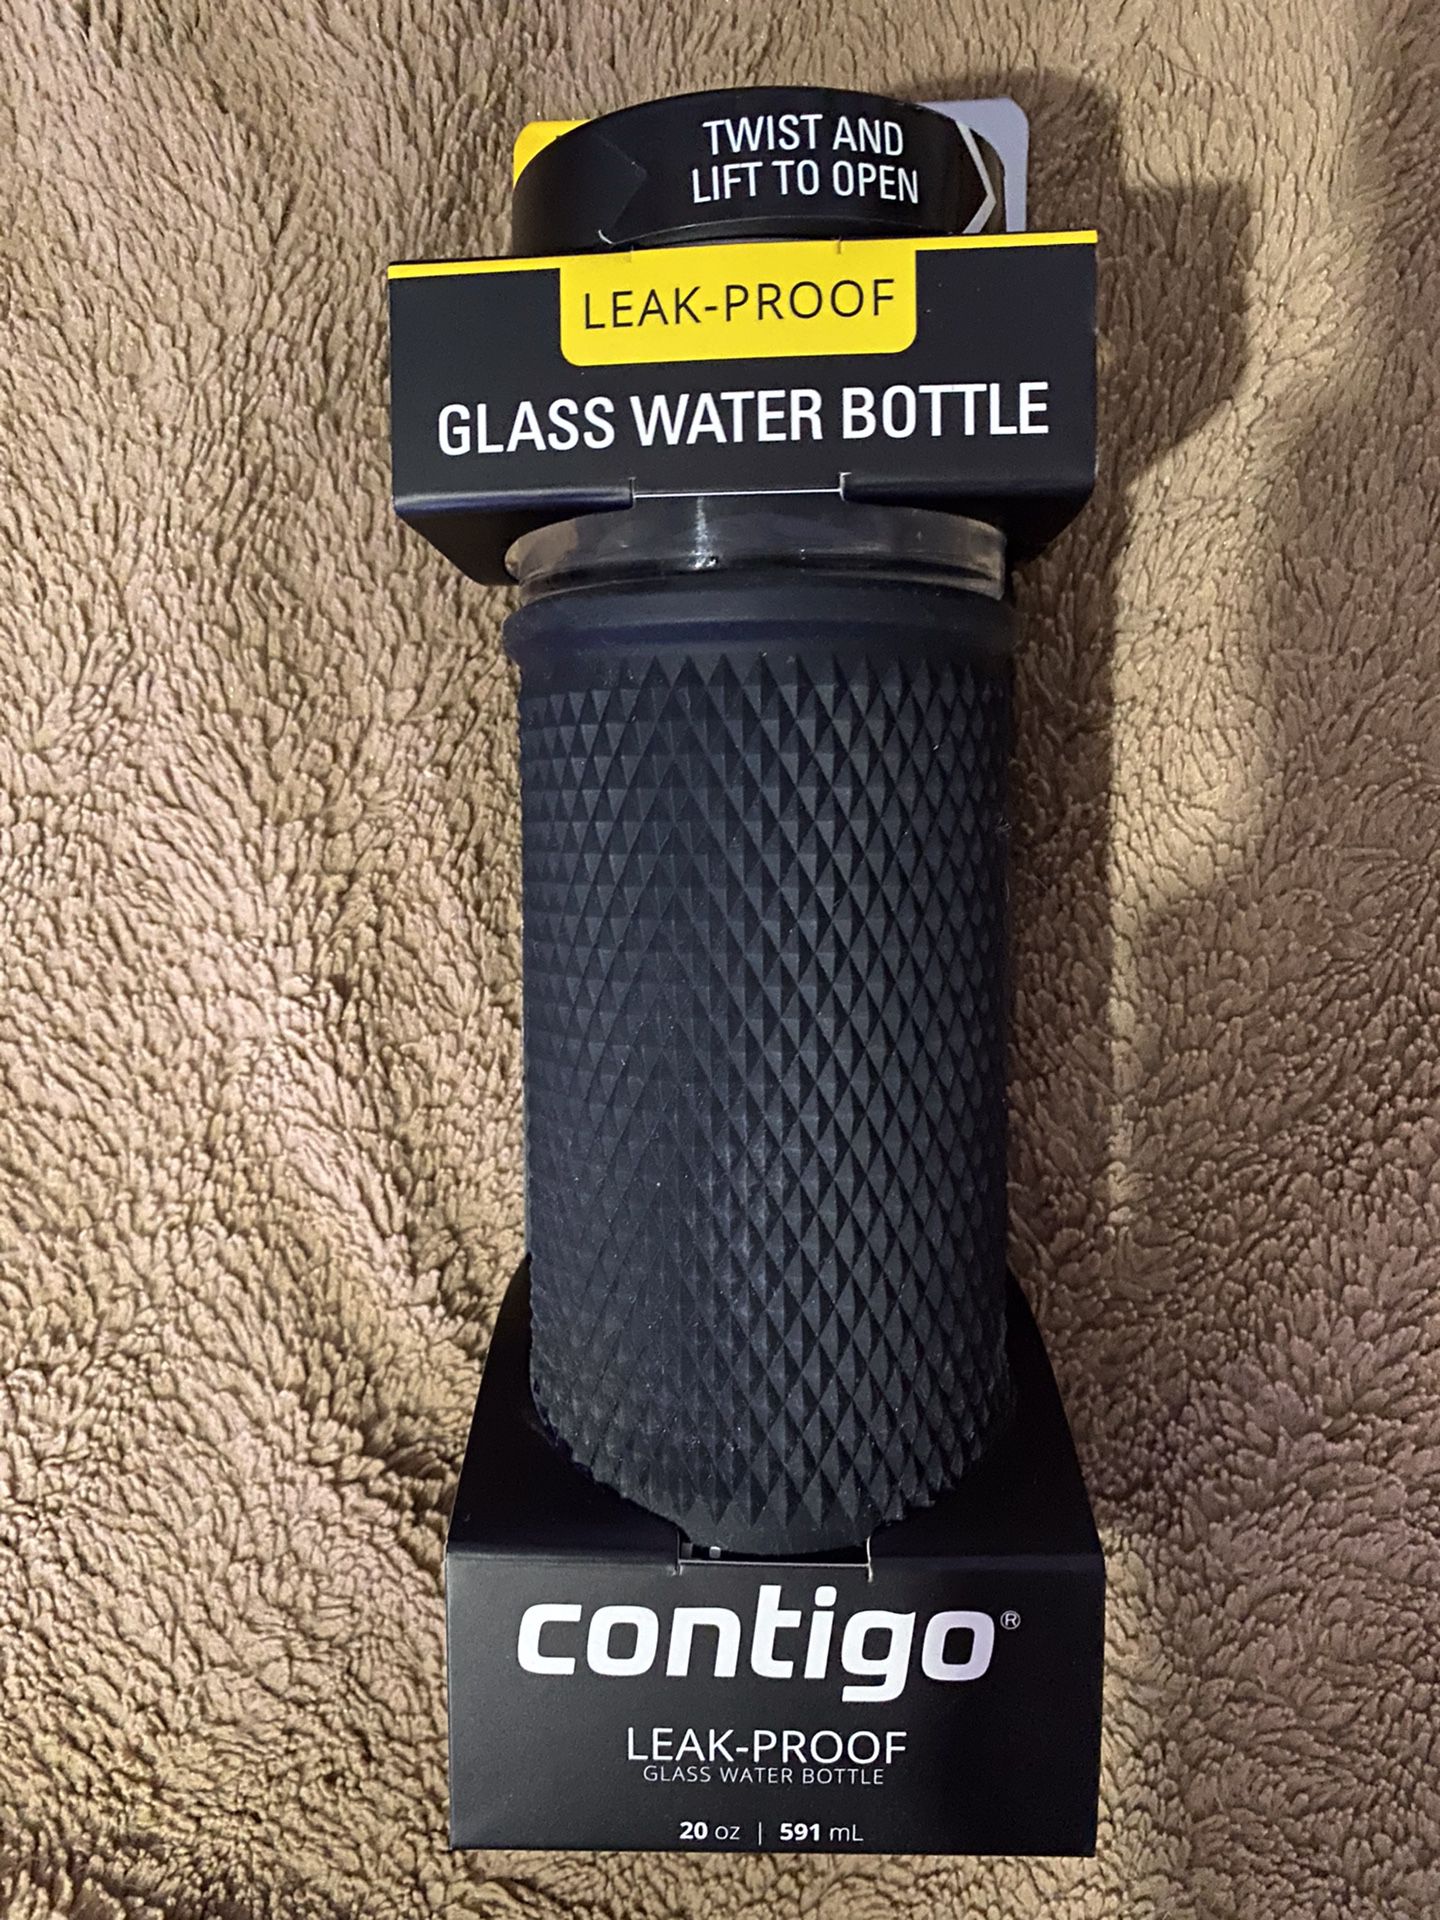 Contigo glass water bottle